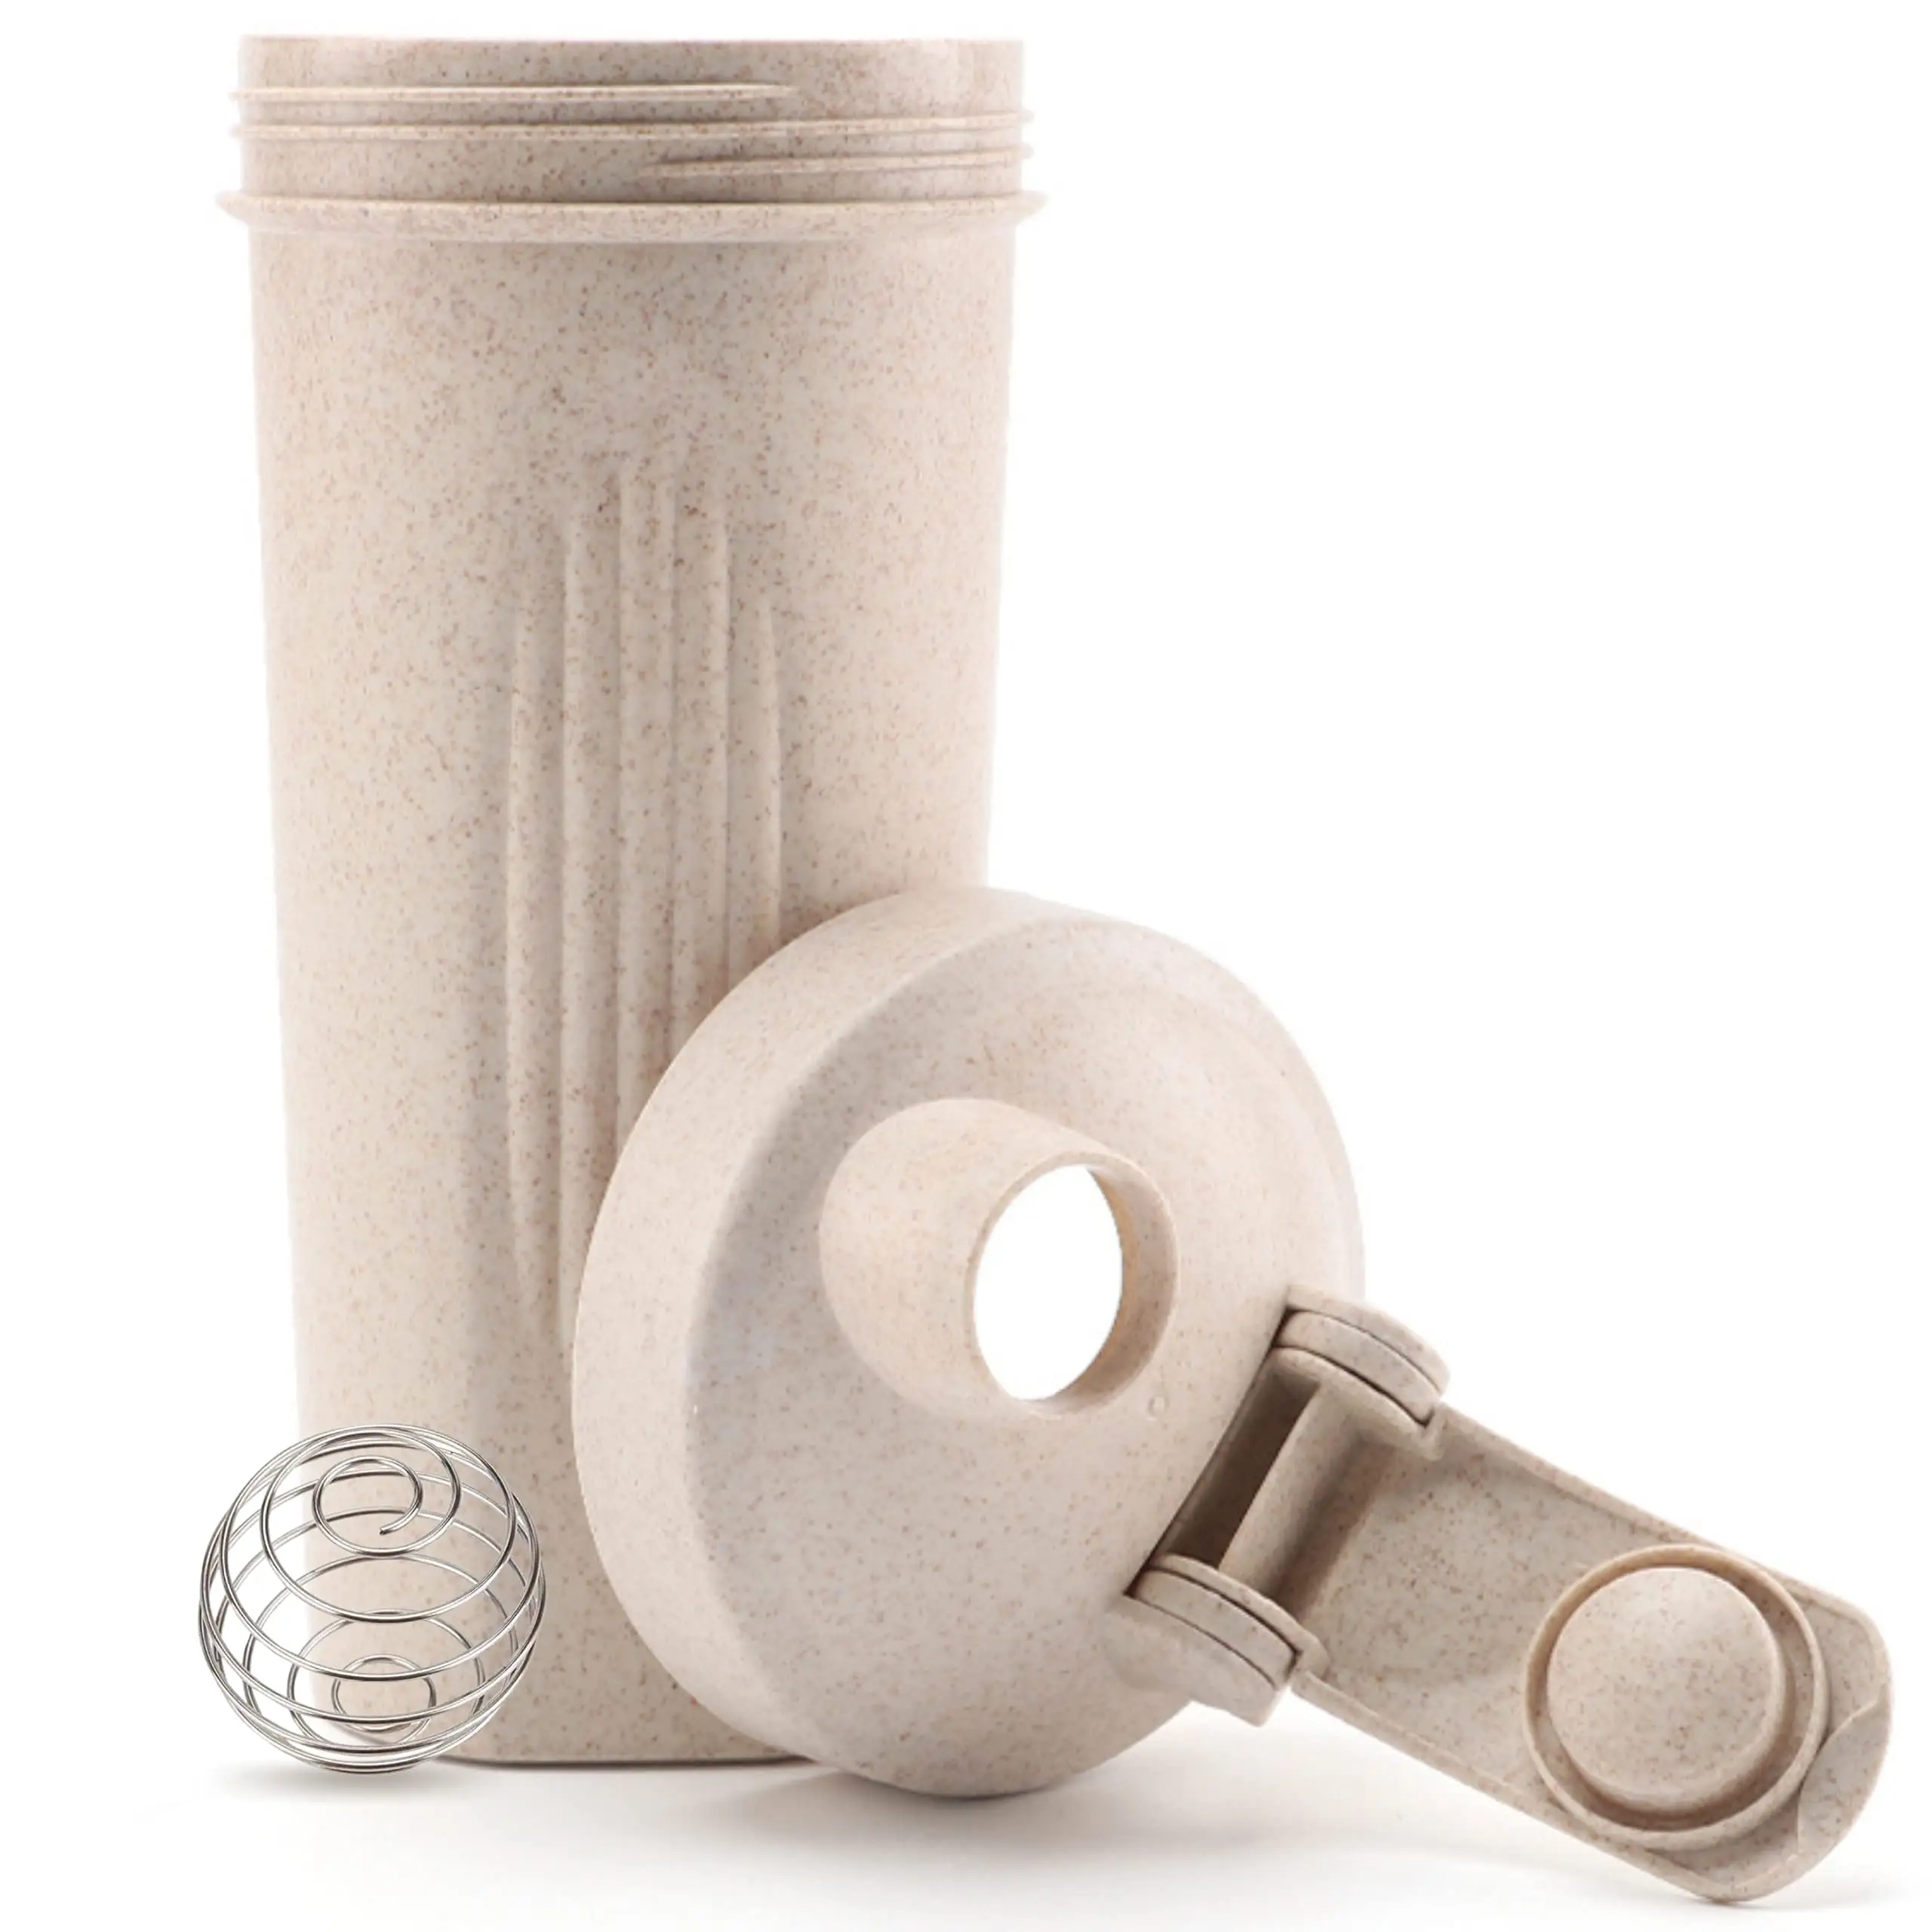 Bouteille shaker écologique avec boule mélangeur, 20 oz (600ml) | Sans BPA, paille de blé, durable | Shakes protéinés, smoothies